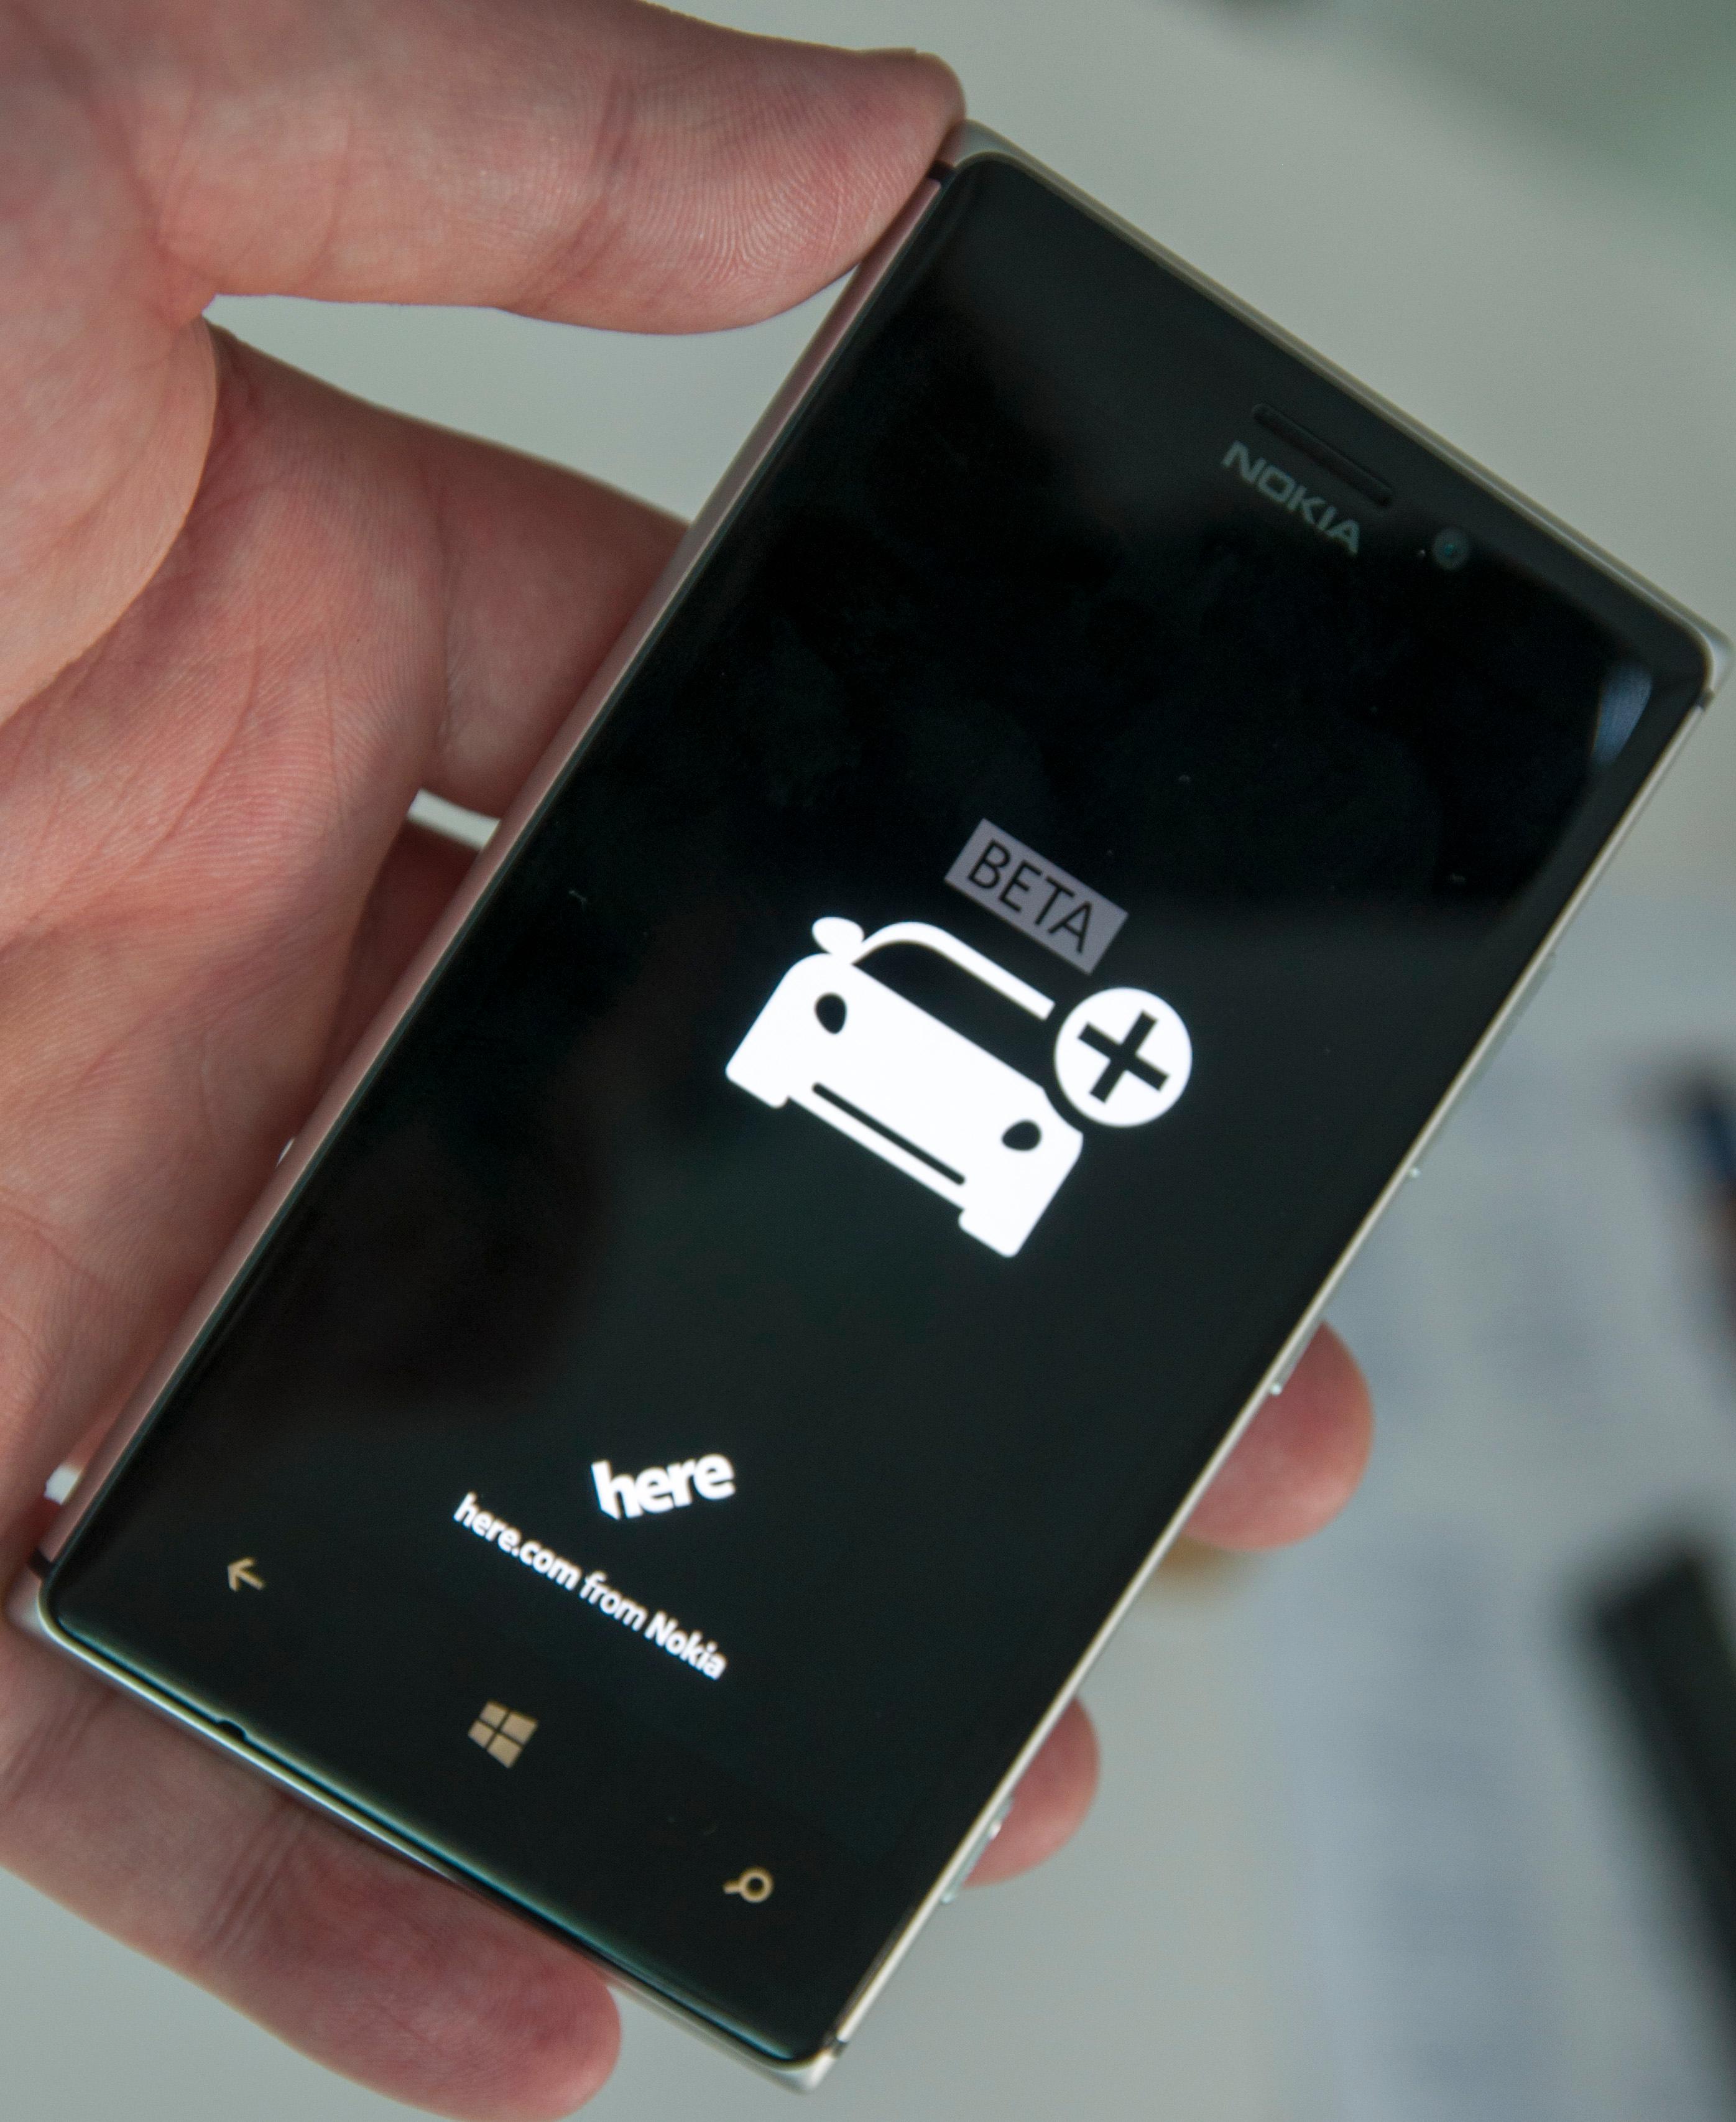 Nokia fremhever egne apper og funksjoner som viktige deler av satsingen.Foto: Finn Jarle Kvalheim, Amobil.no